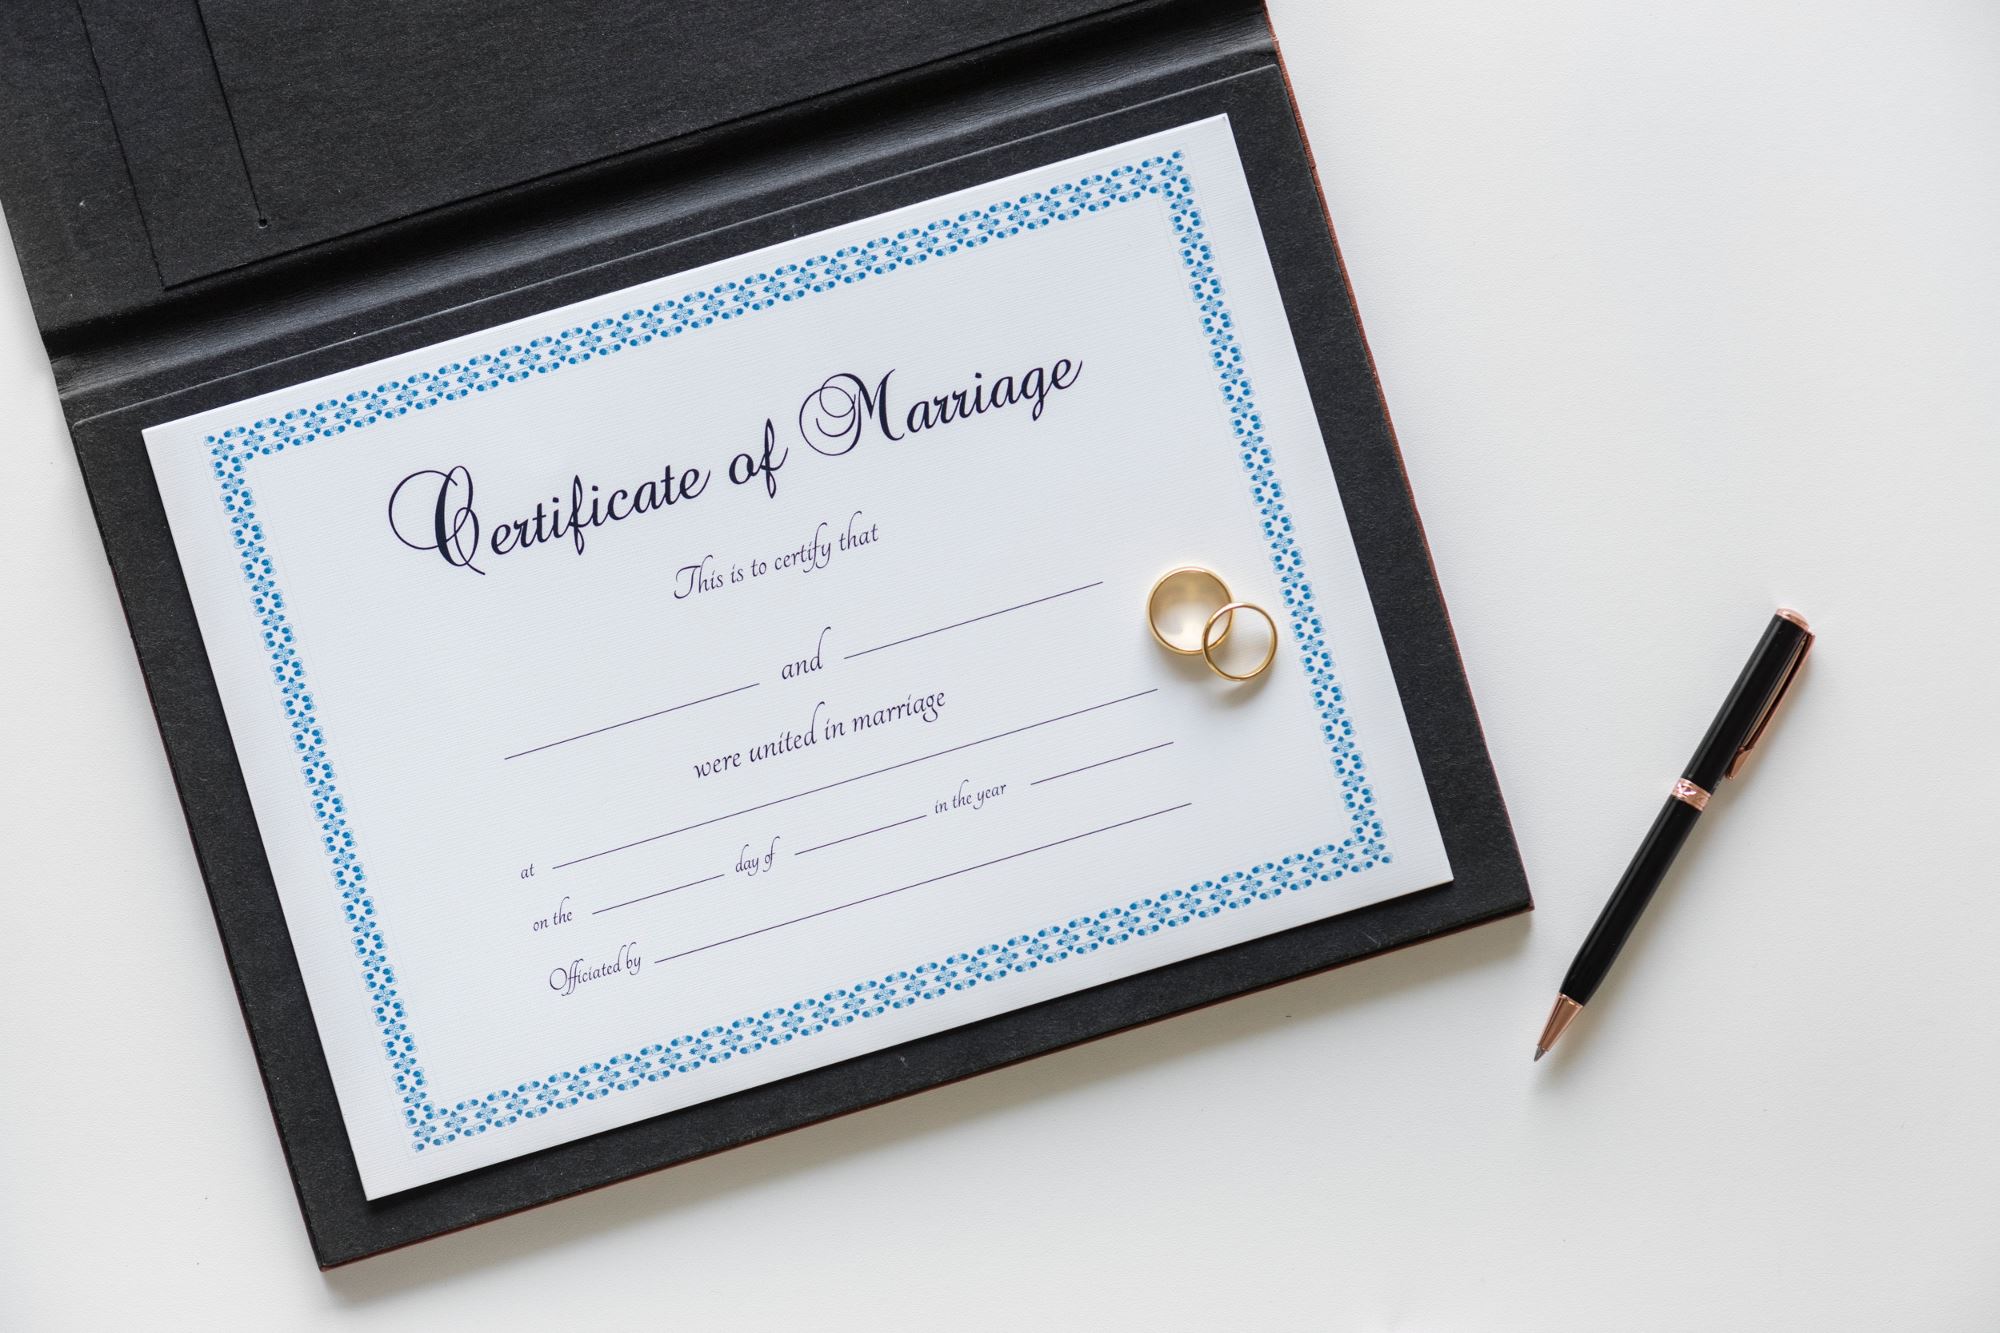 Certificato di matrimonio. Articolo matrimonio in chiesa